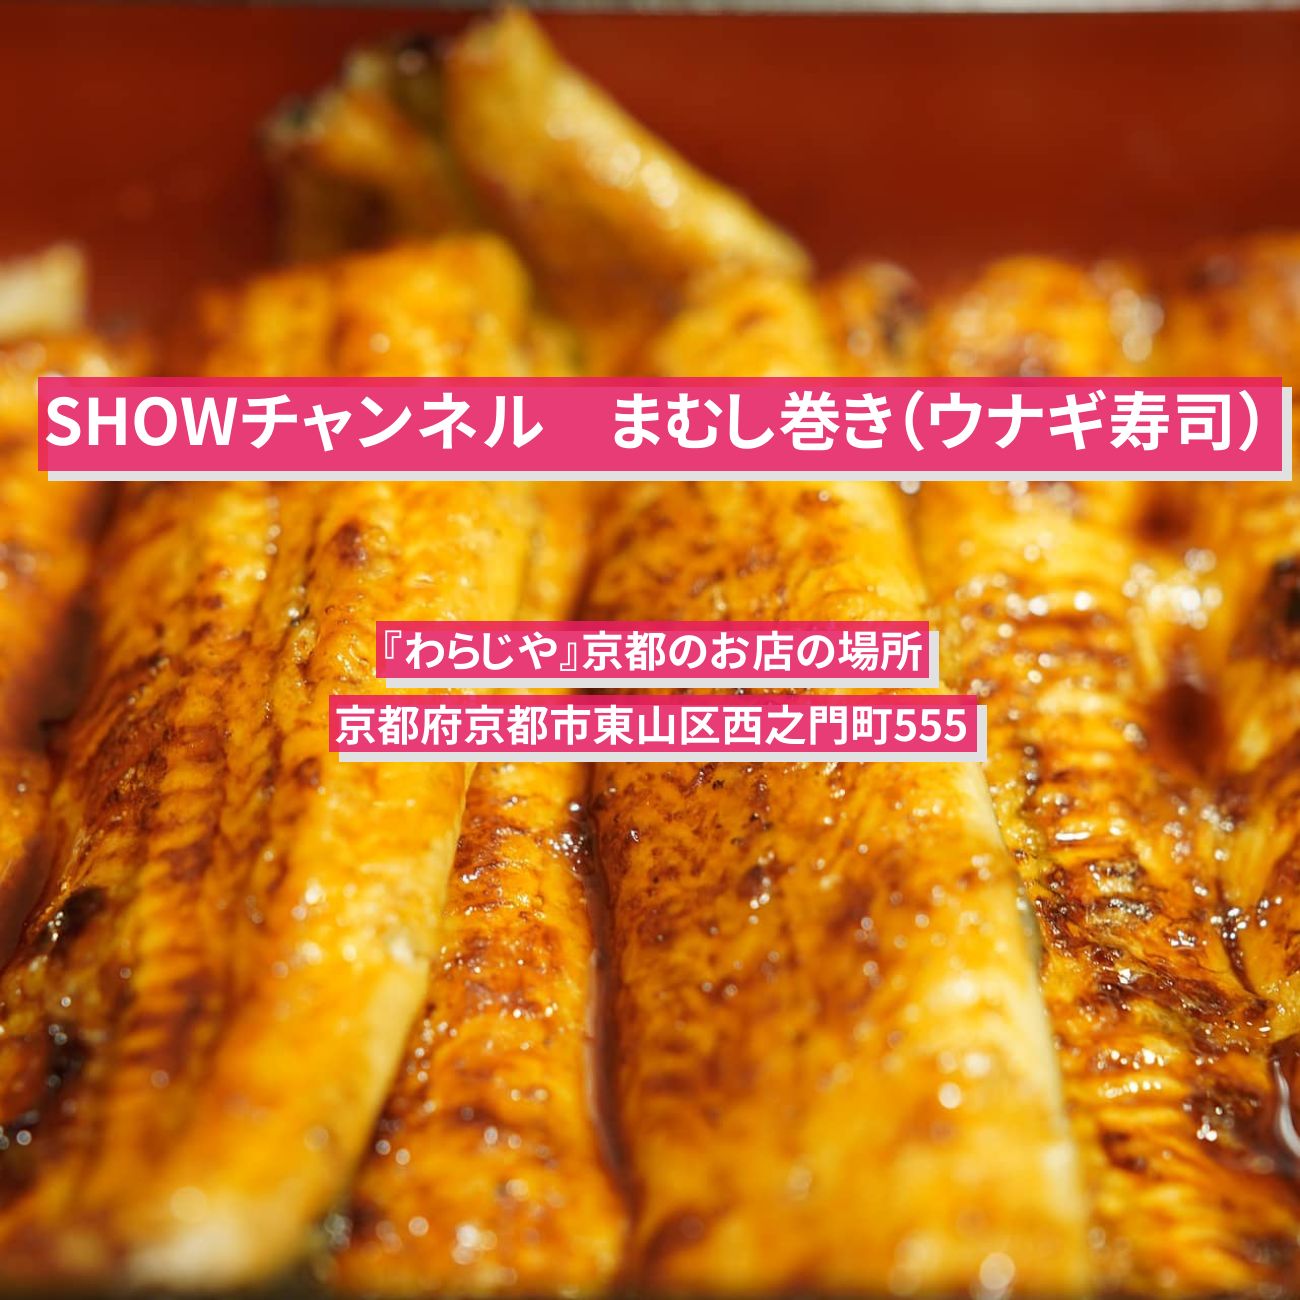 【SHOWチャンネル】まむし巻き（うなぎ姿寿司）『わらじや』京都のお店の場所